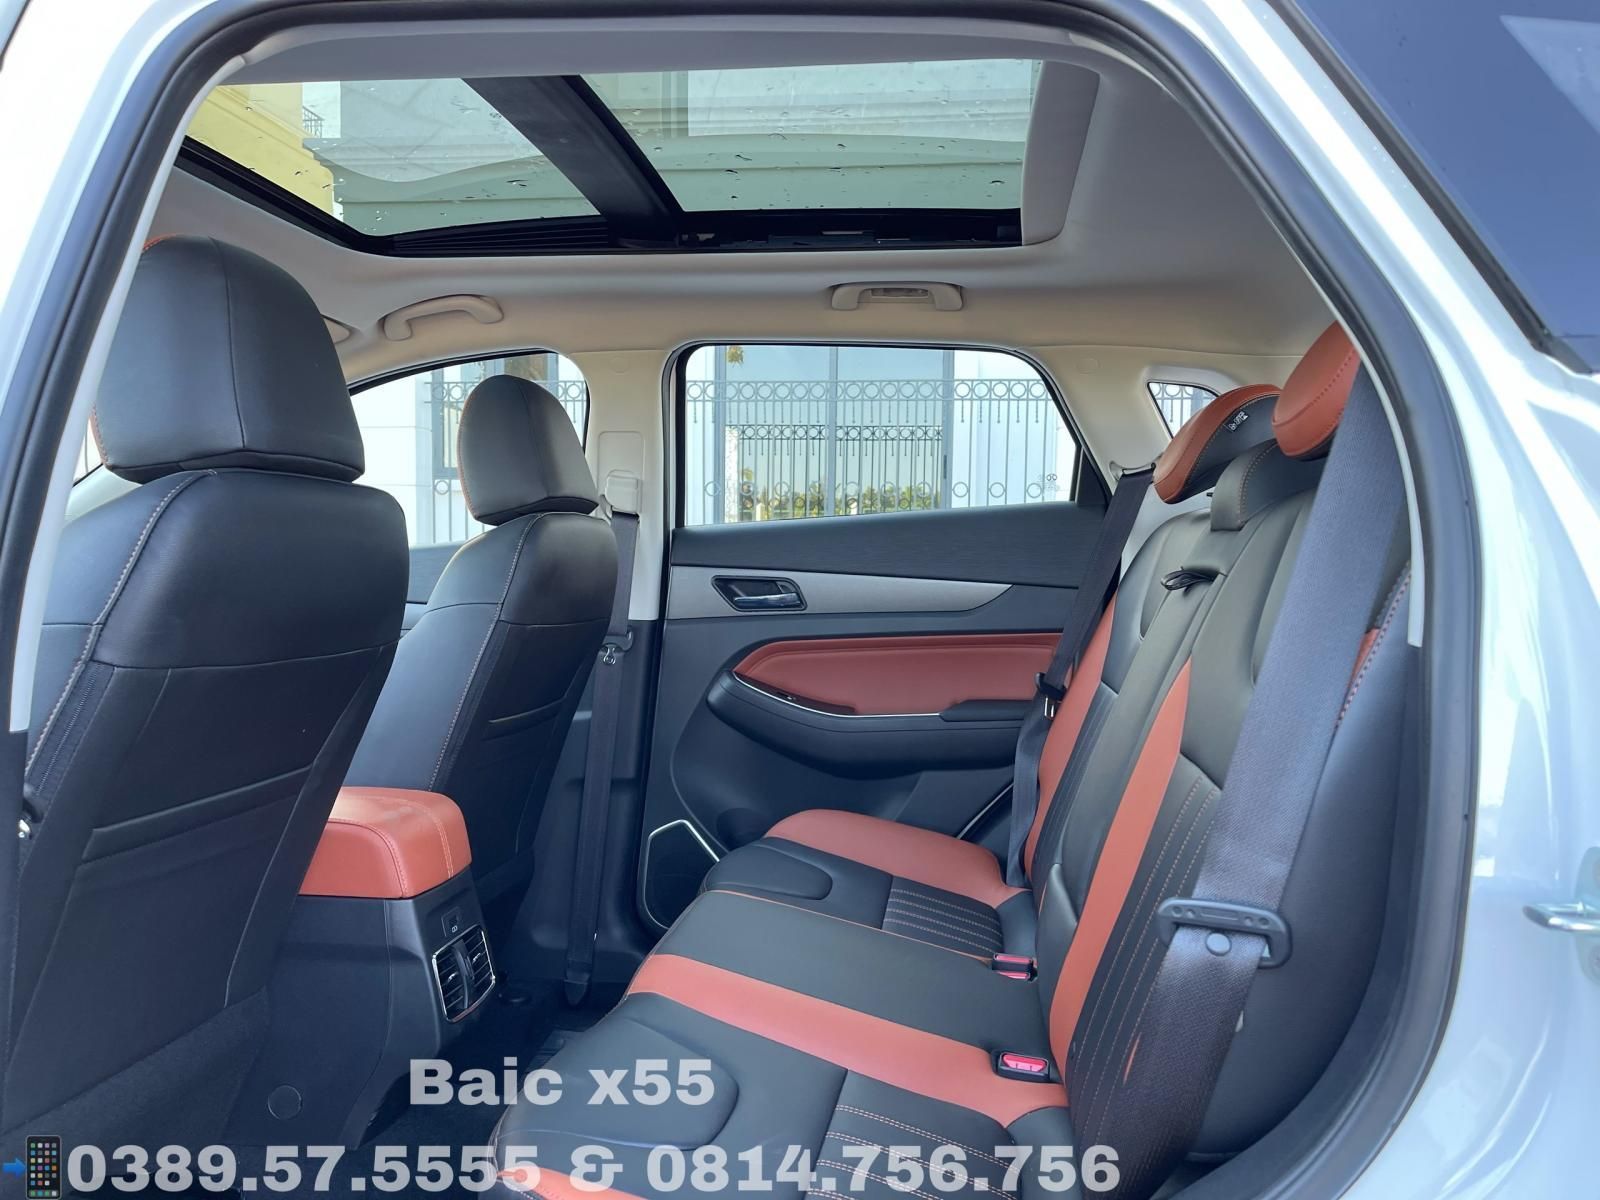 Fairy 2021 - [Phân phối chính hãng] BAIC X55 2021 nhập khẩu nguyên chiếc, bảo hành 3 năm, hỗ trợ 80% giá trị xe, có sẵn giao ngay